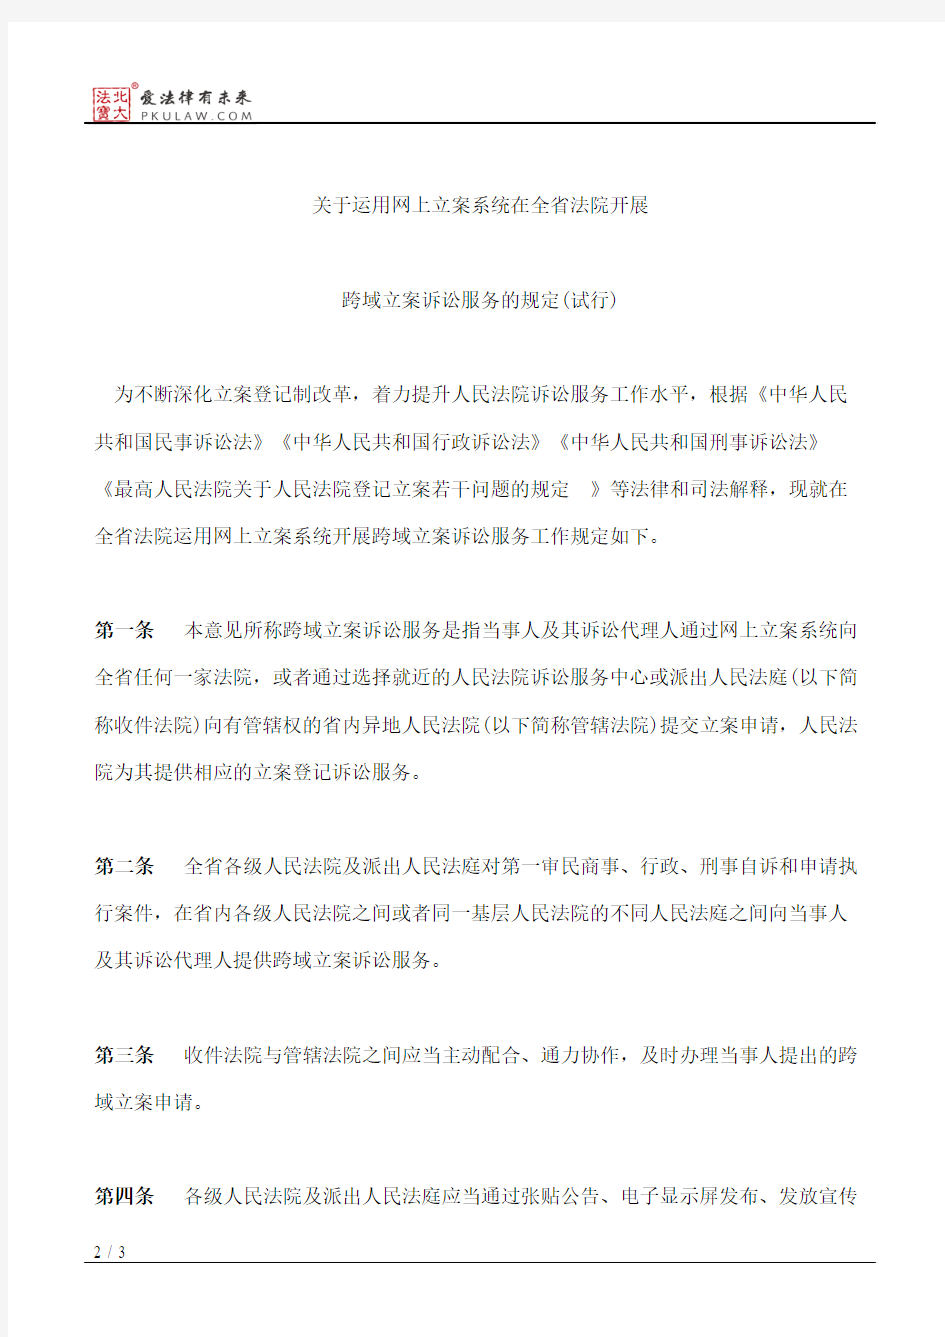 江苏省高级人民法院关于印发《关于运用网上立案系统在全省法院开